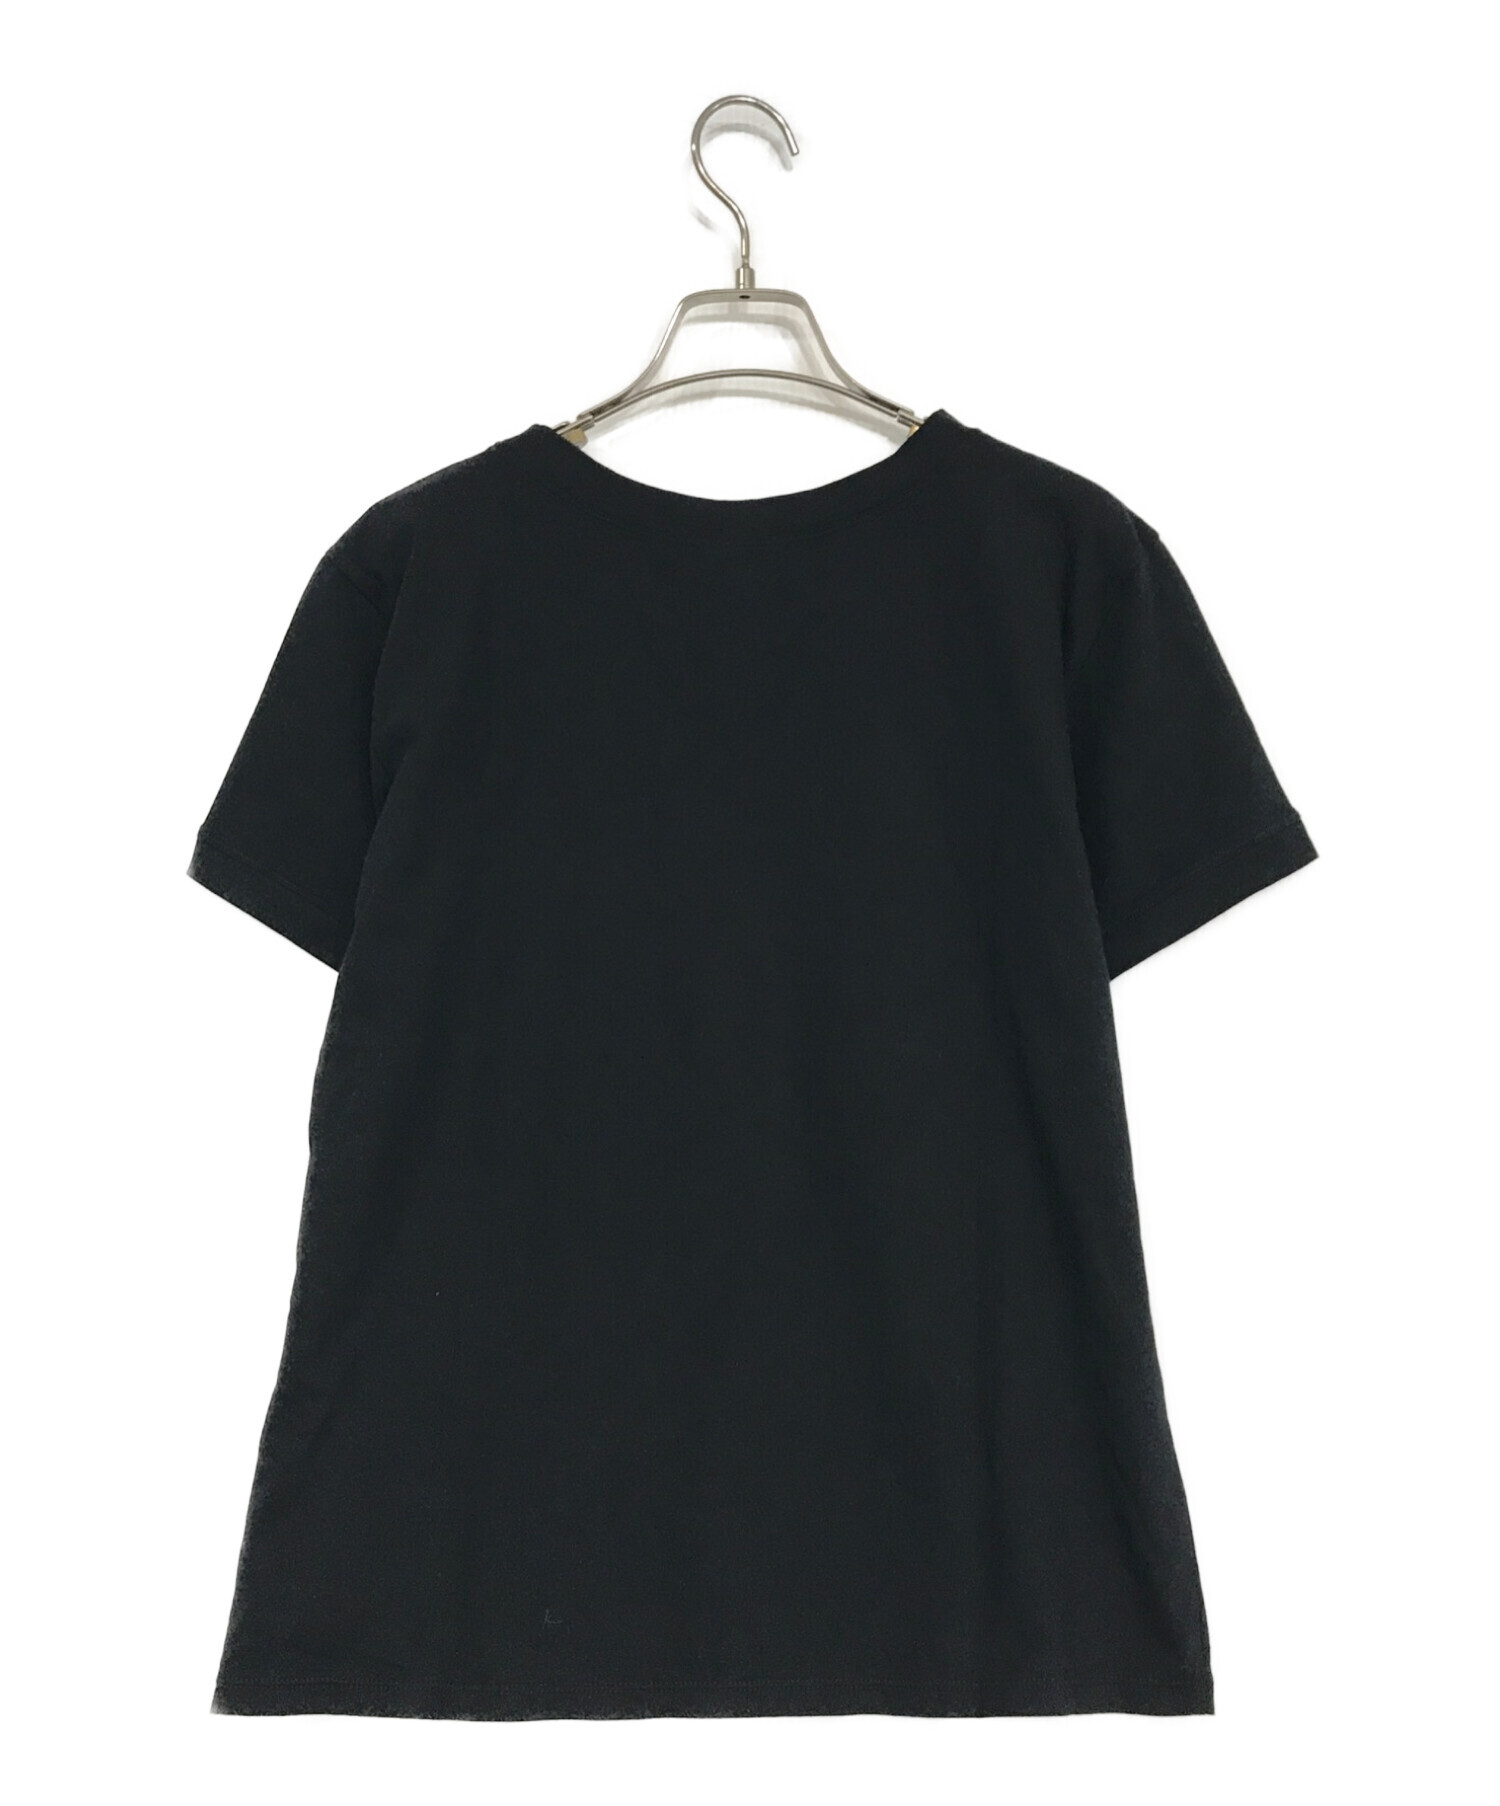 repetto (レペット) ロゴTシャツ ブラック サイズ:L